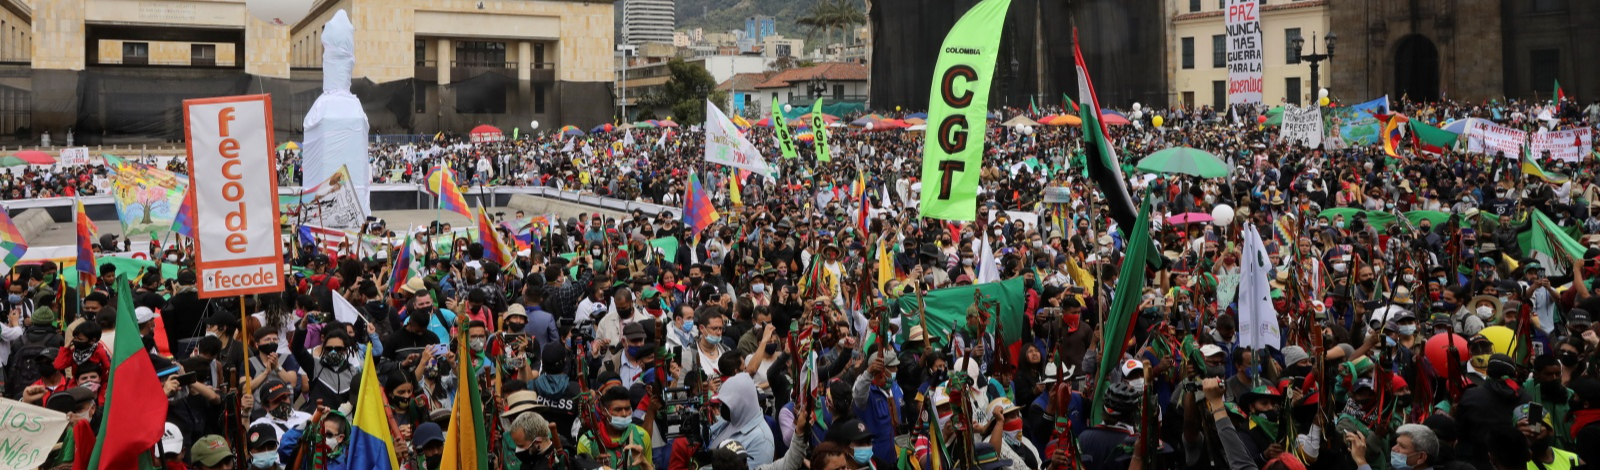 Colômbia: Nova jornada de protetos expressa indignação contra políticas de Iván Duque